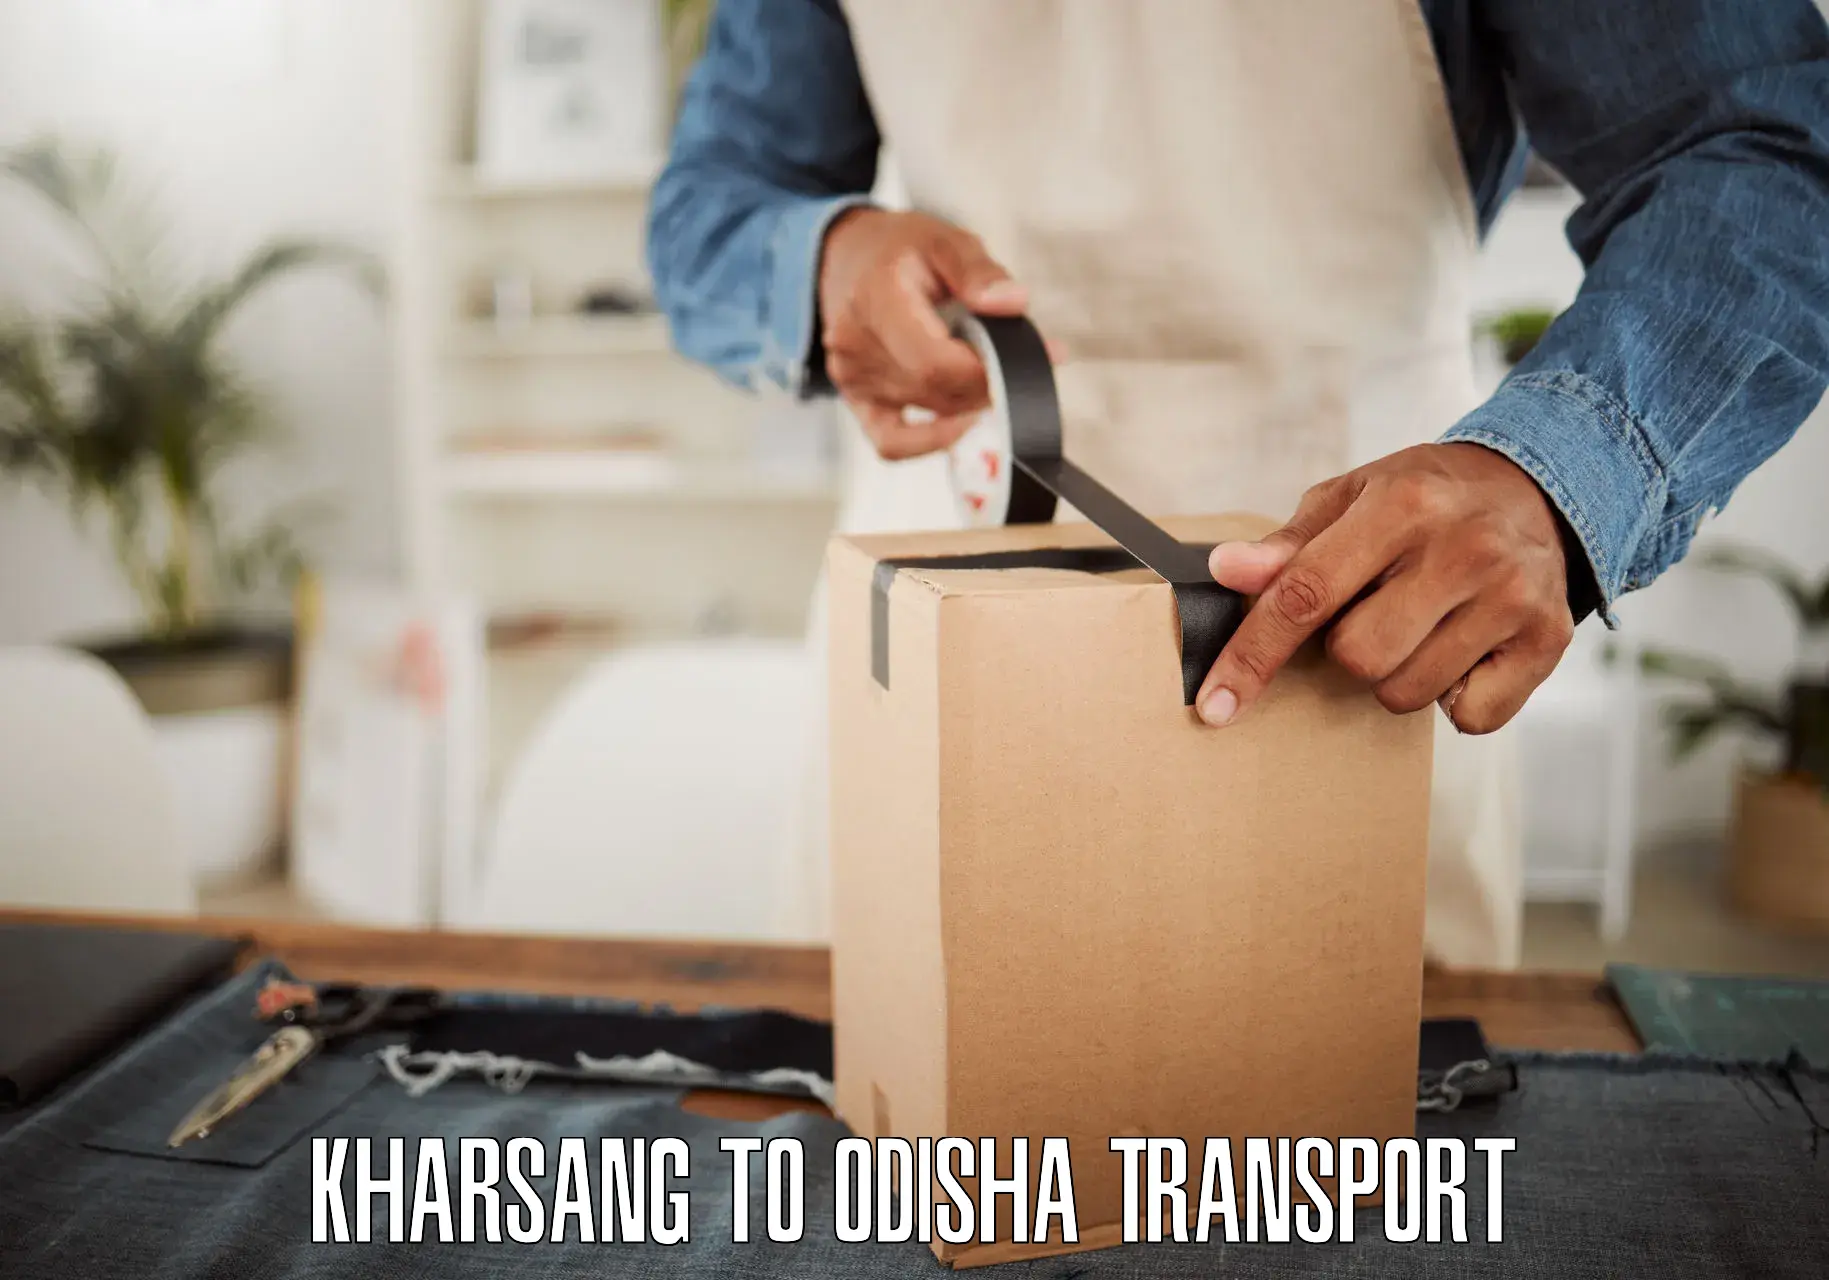 Transport in sharing Kharsang to Rajgangpur